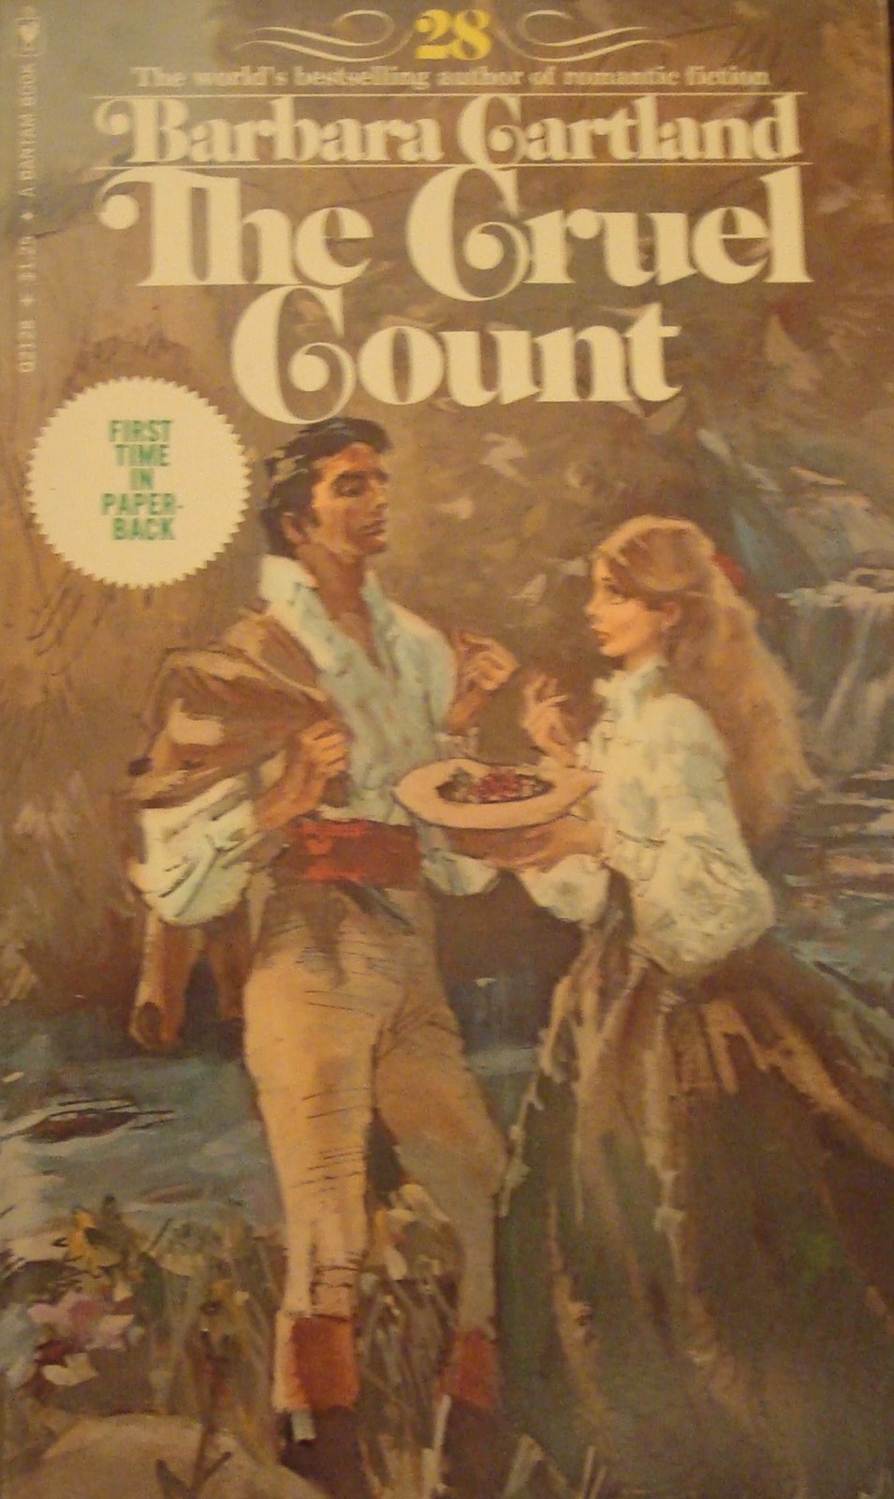 The Cruel Count (Bantam Series No. 28)